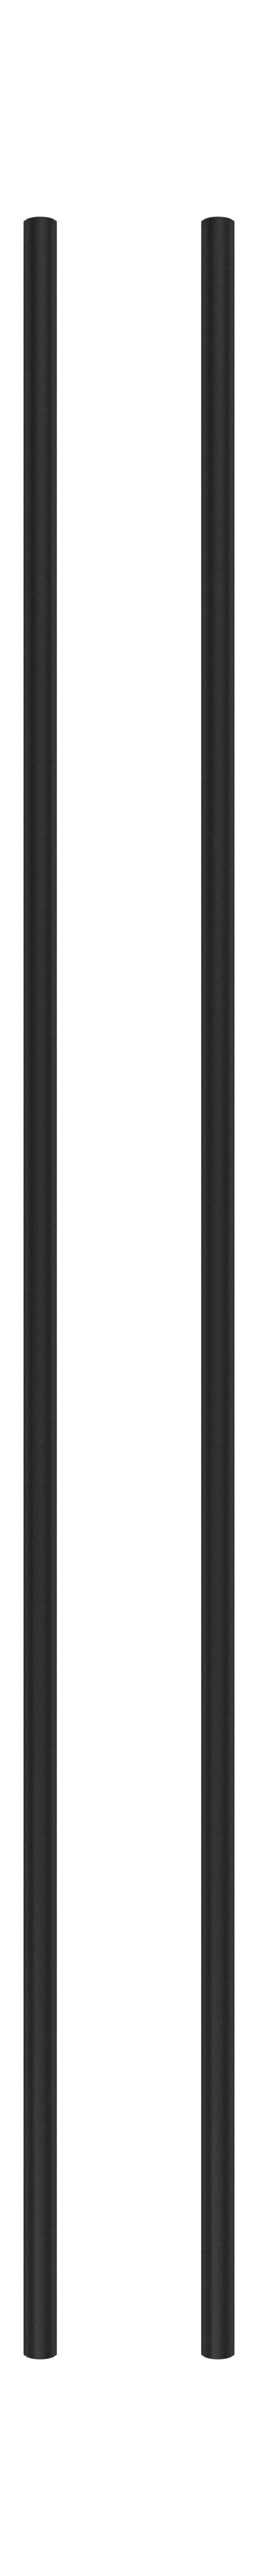 Moebe -Regalsystem/Wandregalbein 115 cm Schwarz, 2 Set von 2